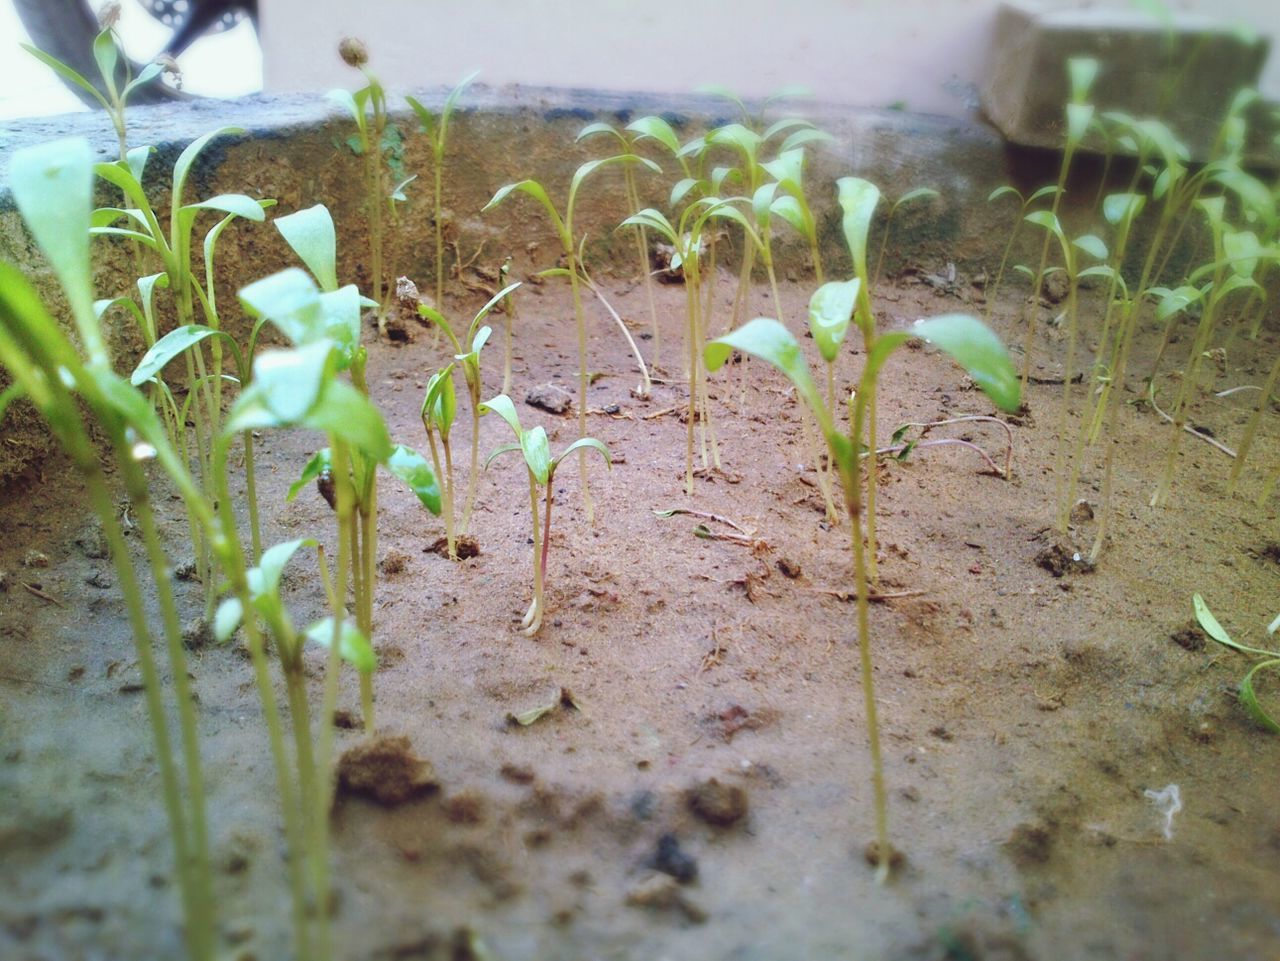 Close-up of seedlings growing in flowerpot